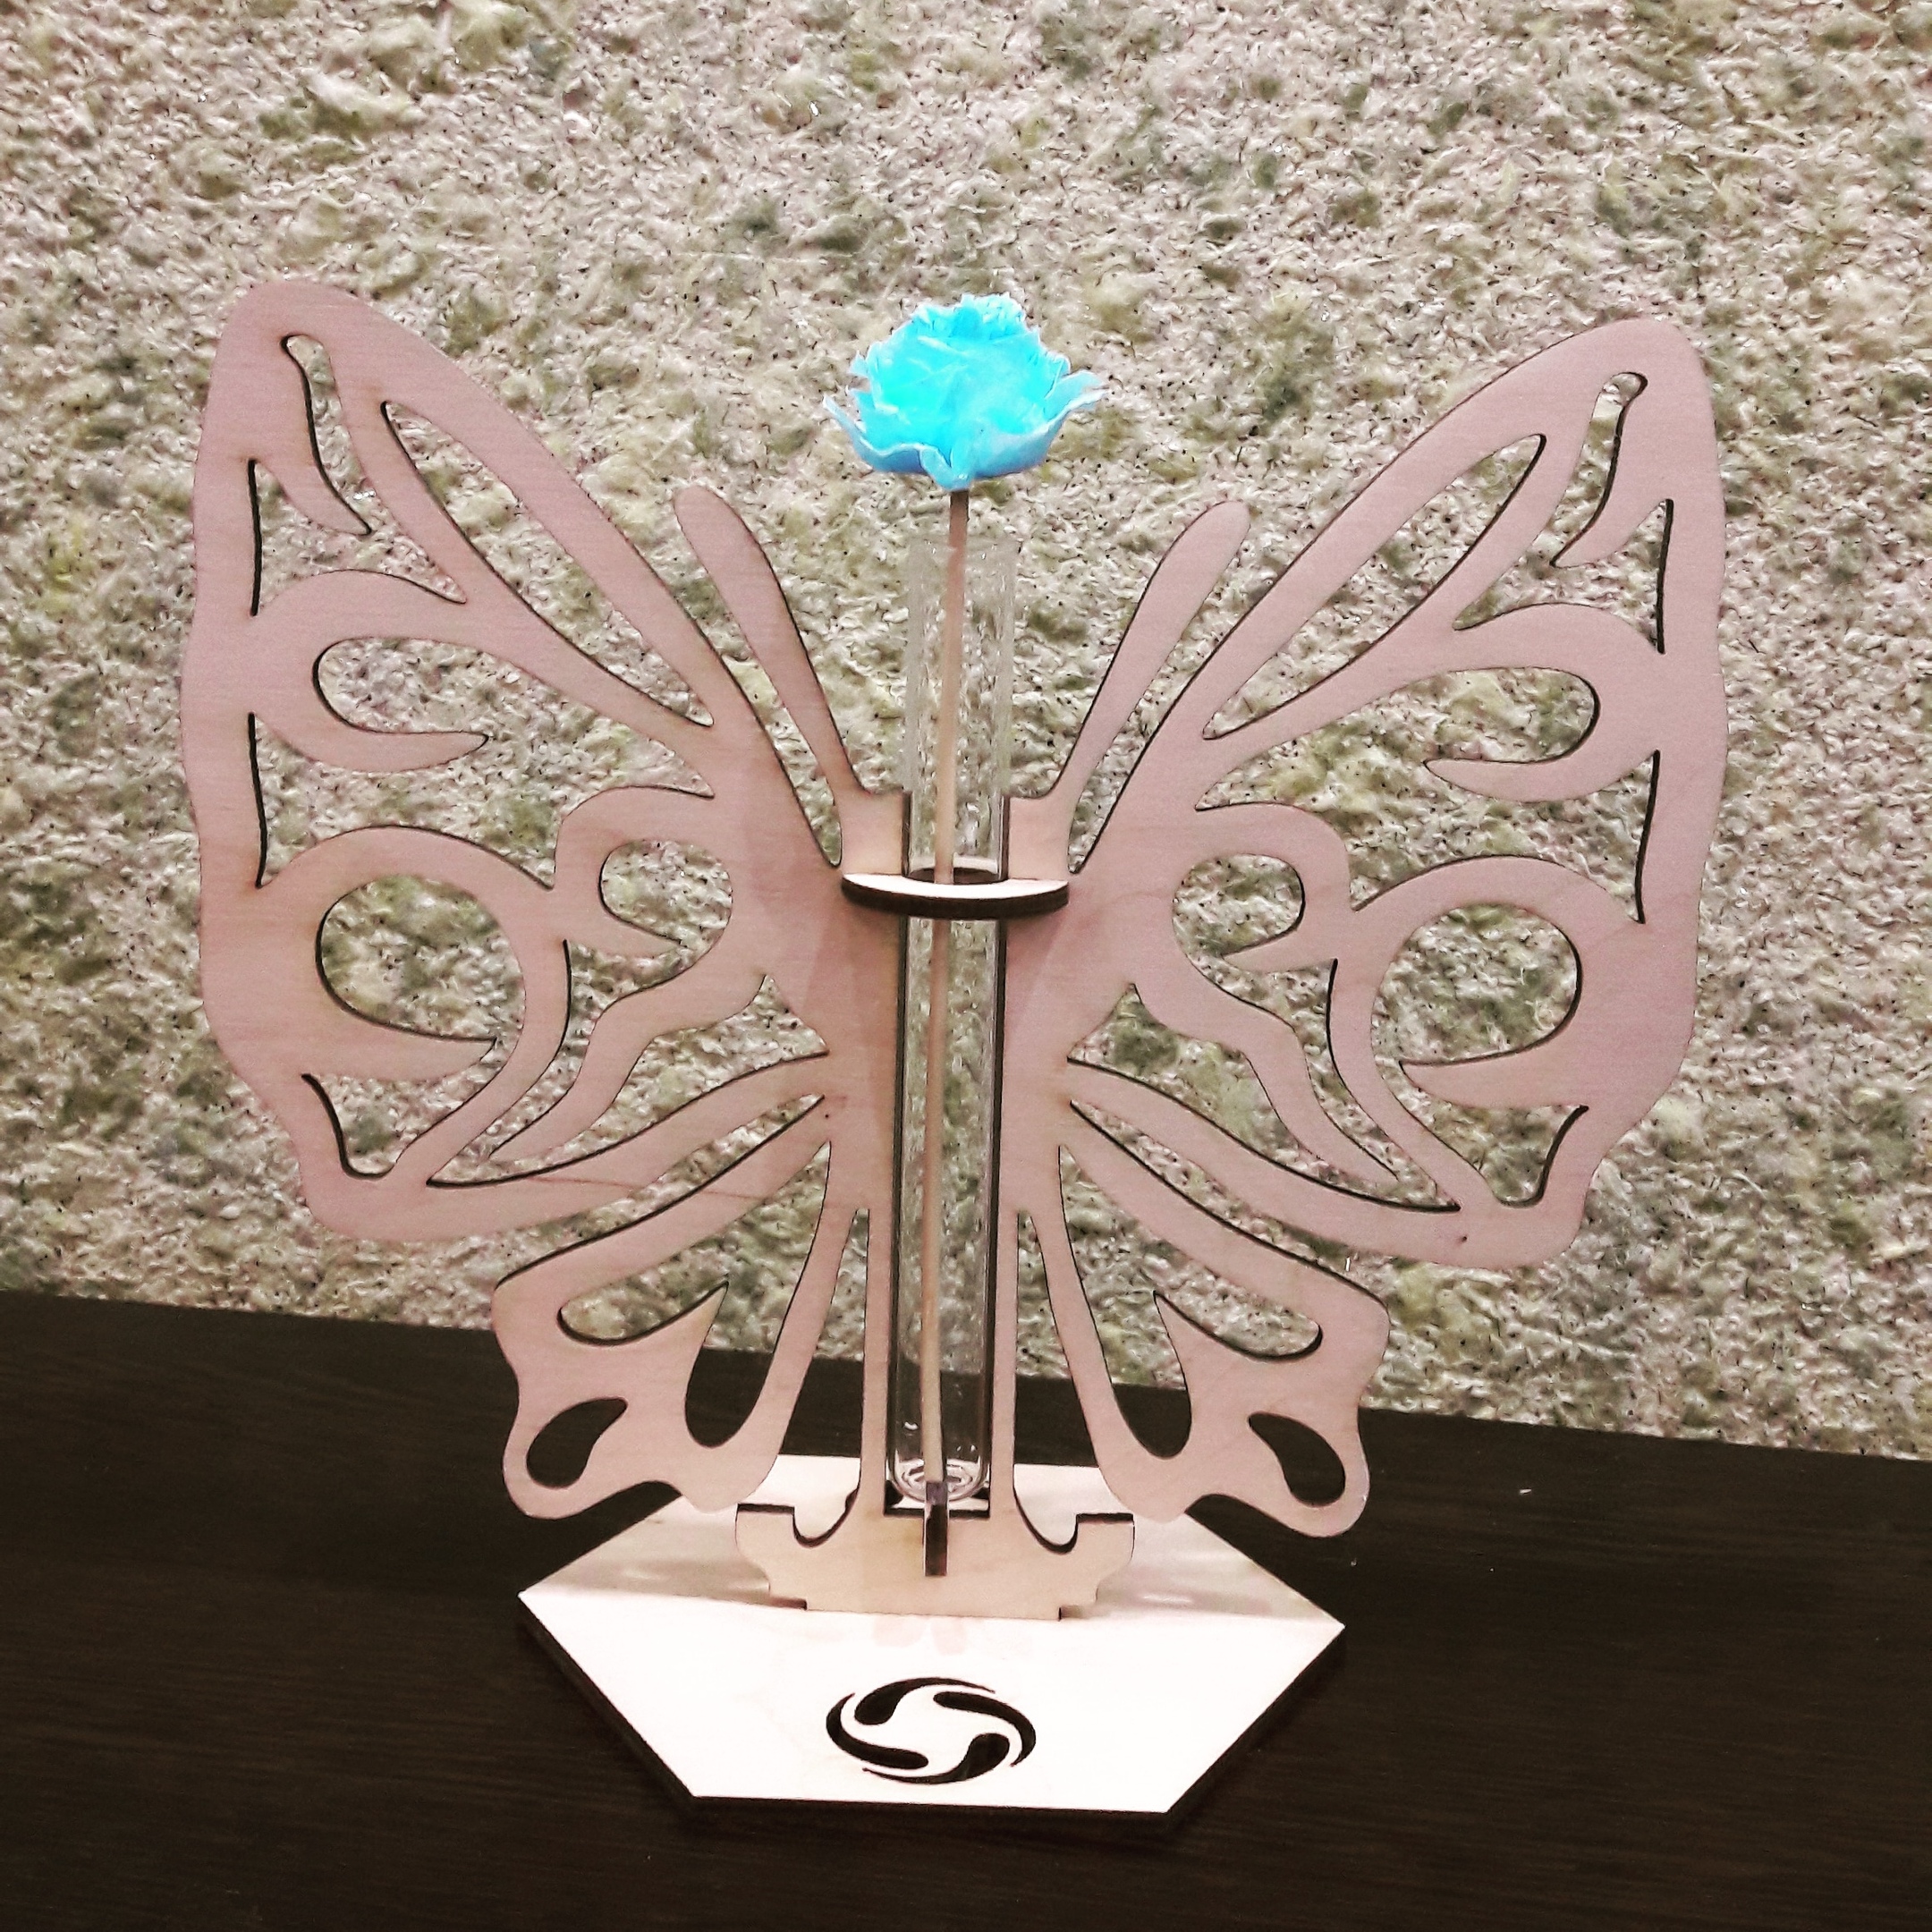 Supporto in legno per vaso di fiori con provetta a farfalla tagliata al laser